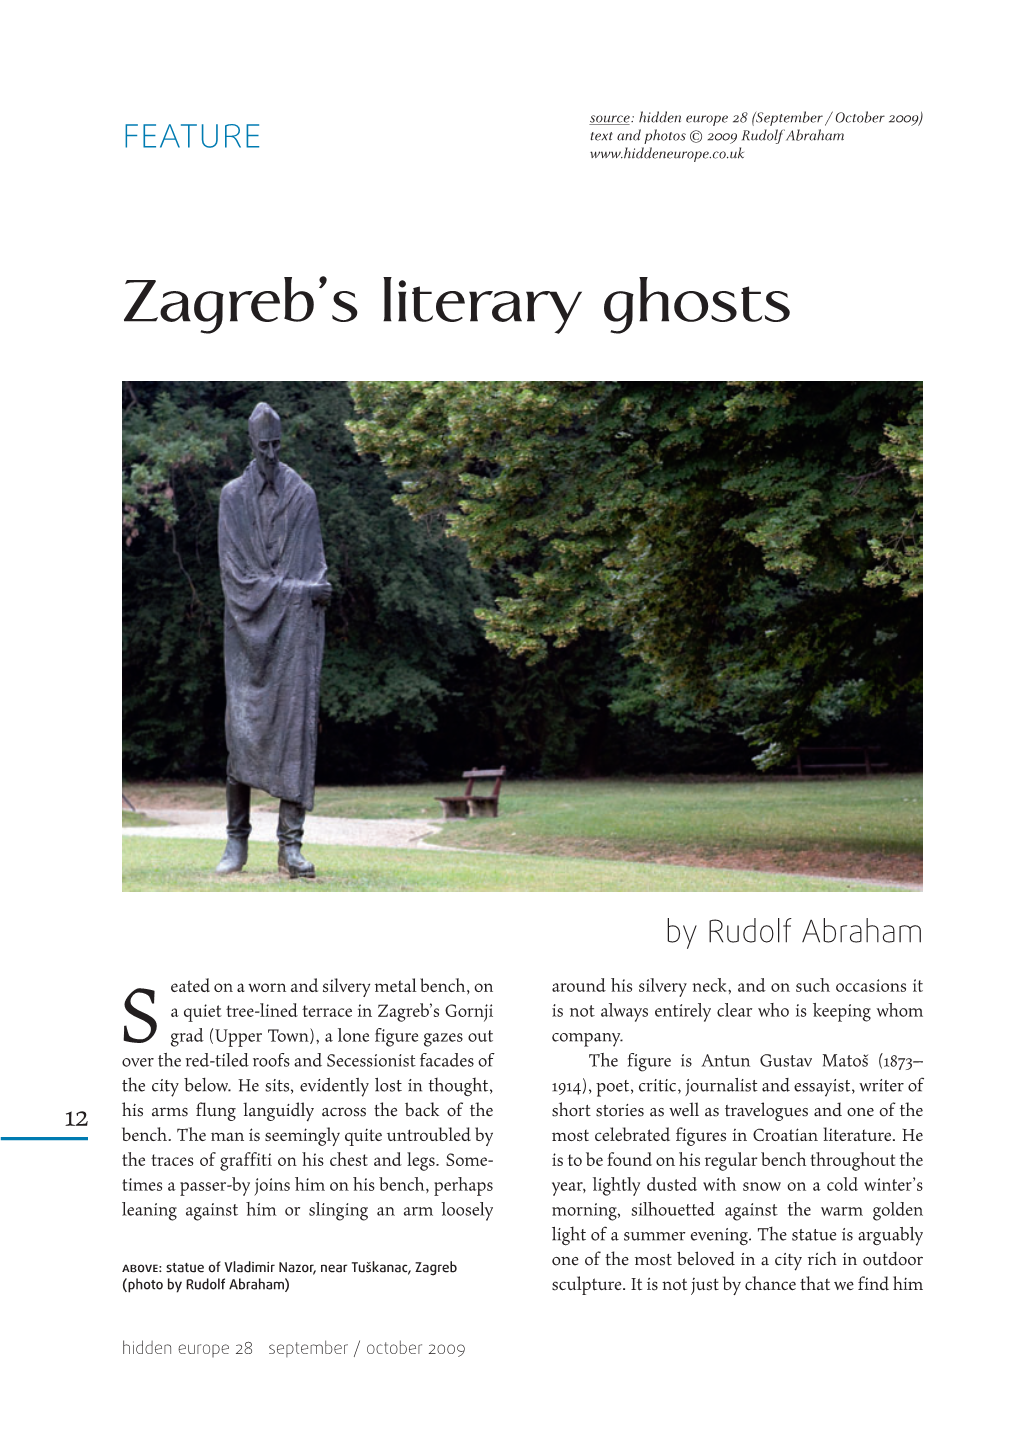 Zagreb's Literary Ghosts